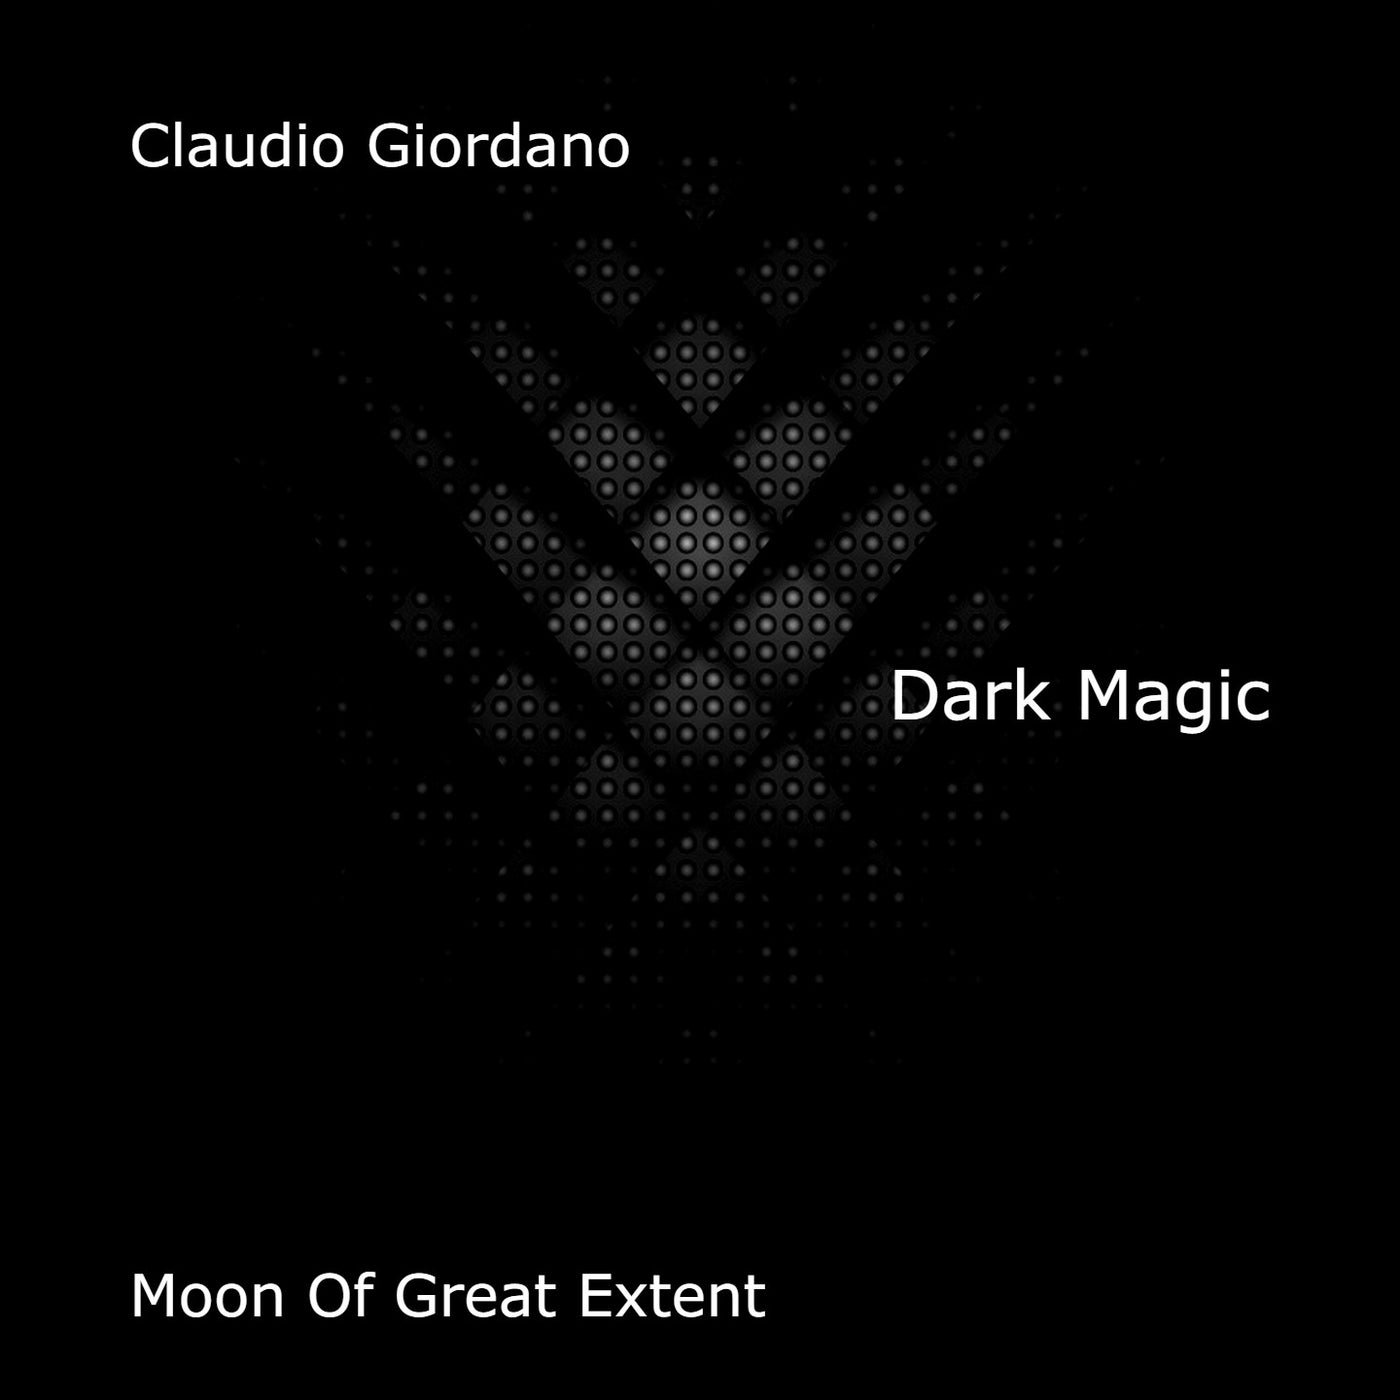 Dark Magic